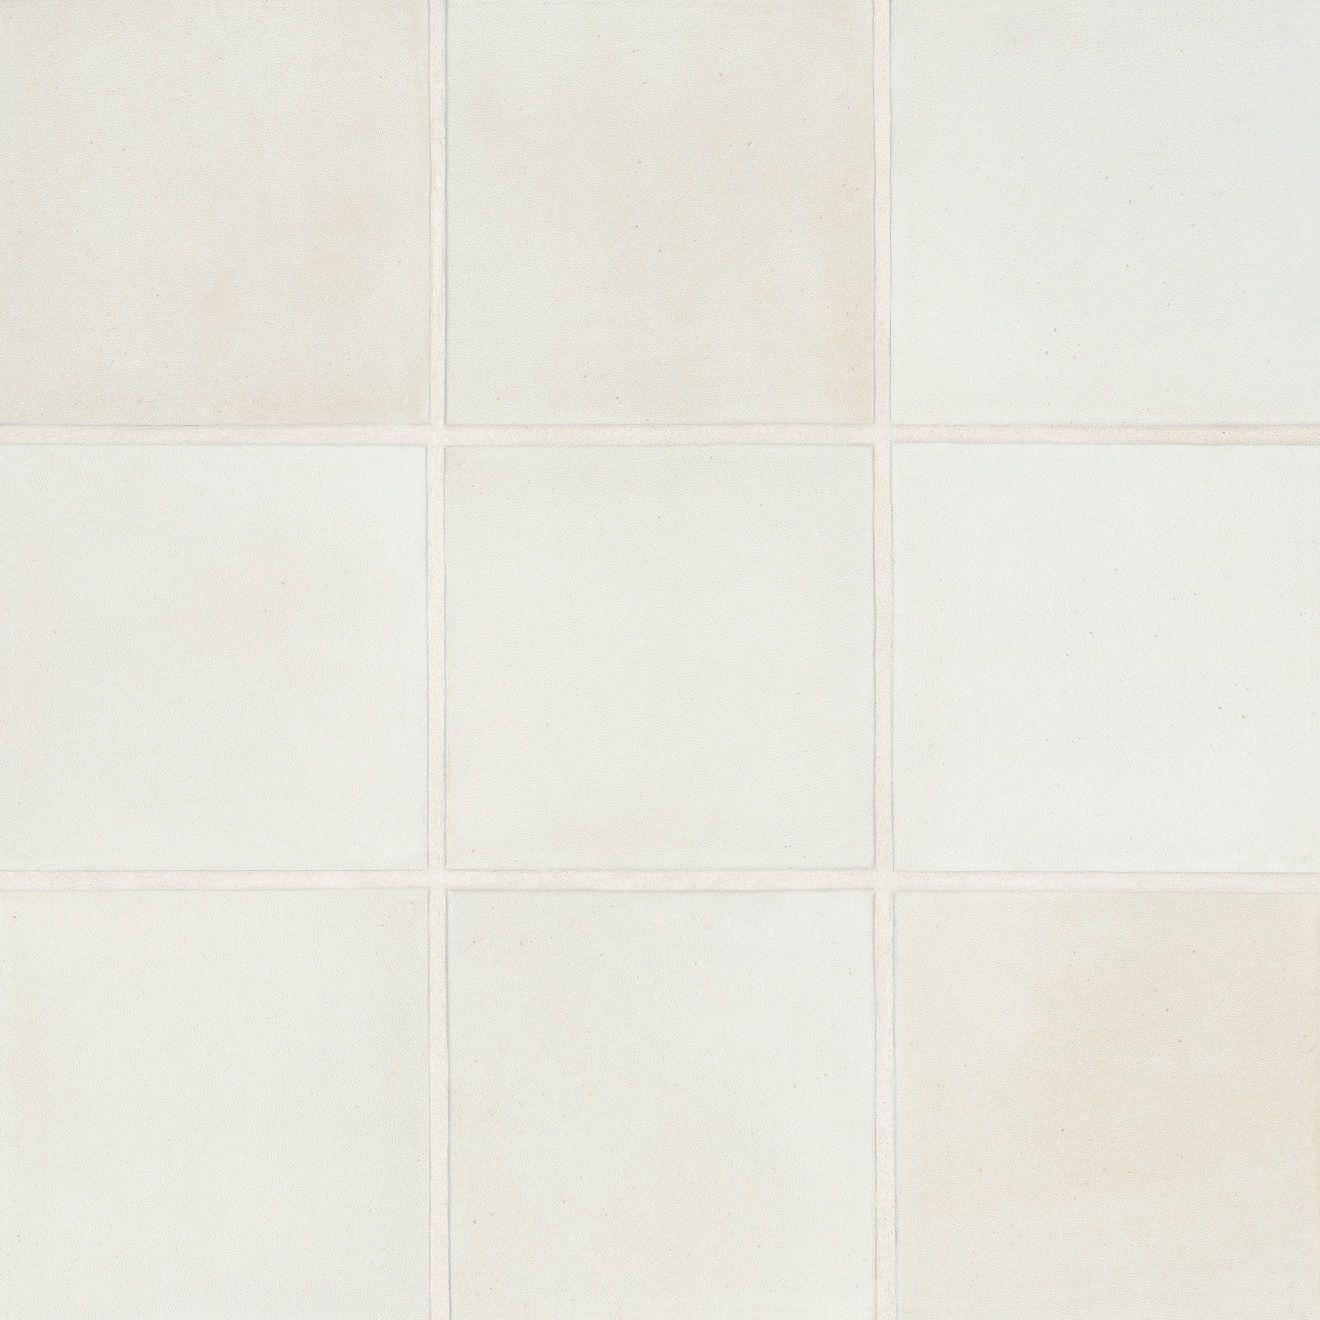 Celine 4" x 4" Matte Porcelain Floor & Wall Tile in White | Bedrosians Tile & Stone